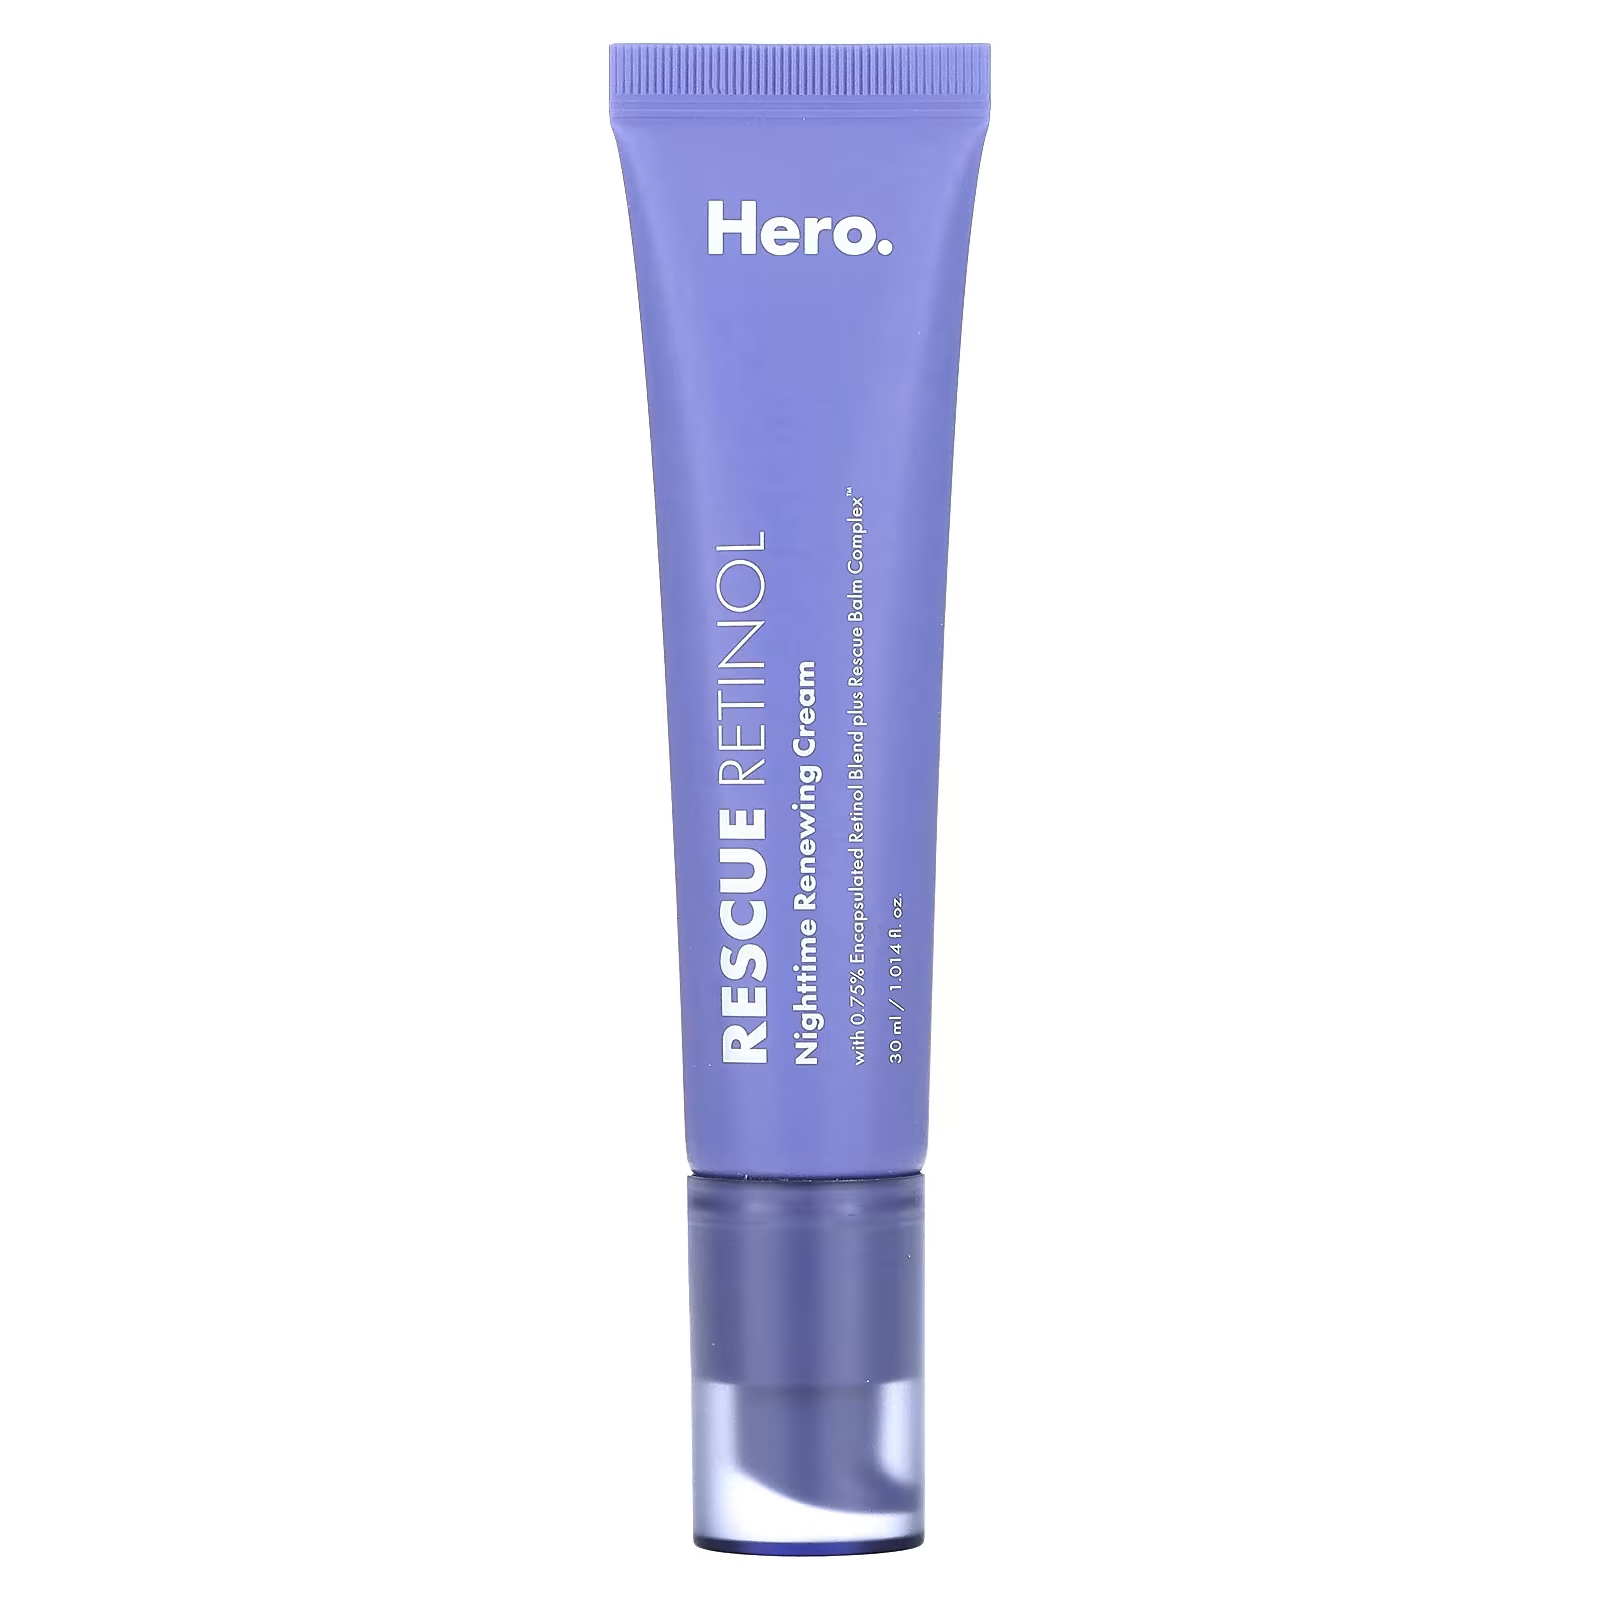 Ночной обновляющий крем Hero Cosmetics Rescue Retinol, 30 мл. dr dennis gross ночной обновляющий пилинг advanced retinol ferulic 16 шт